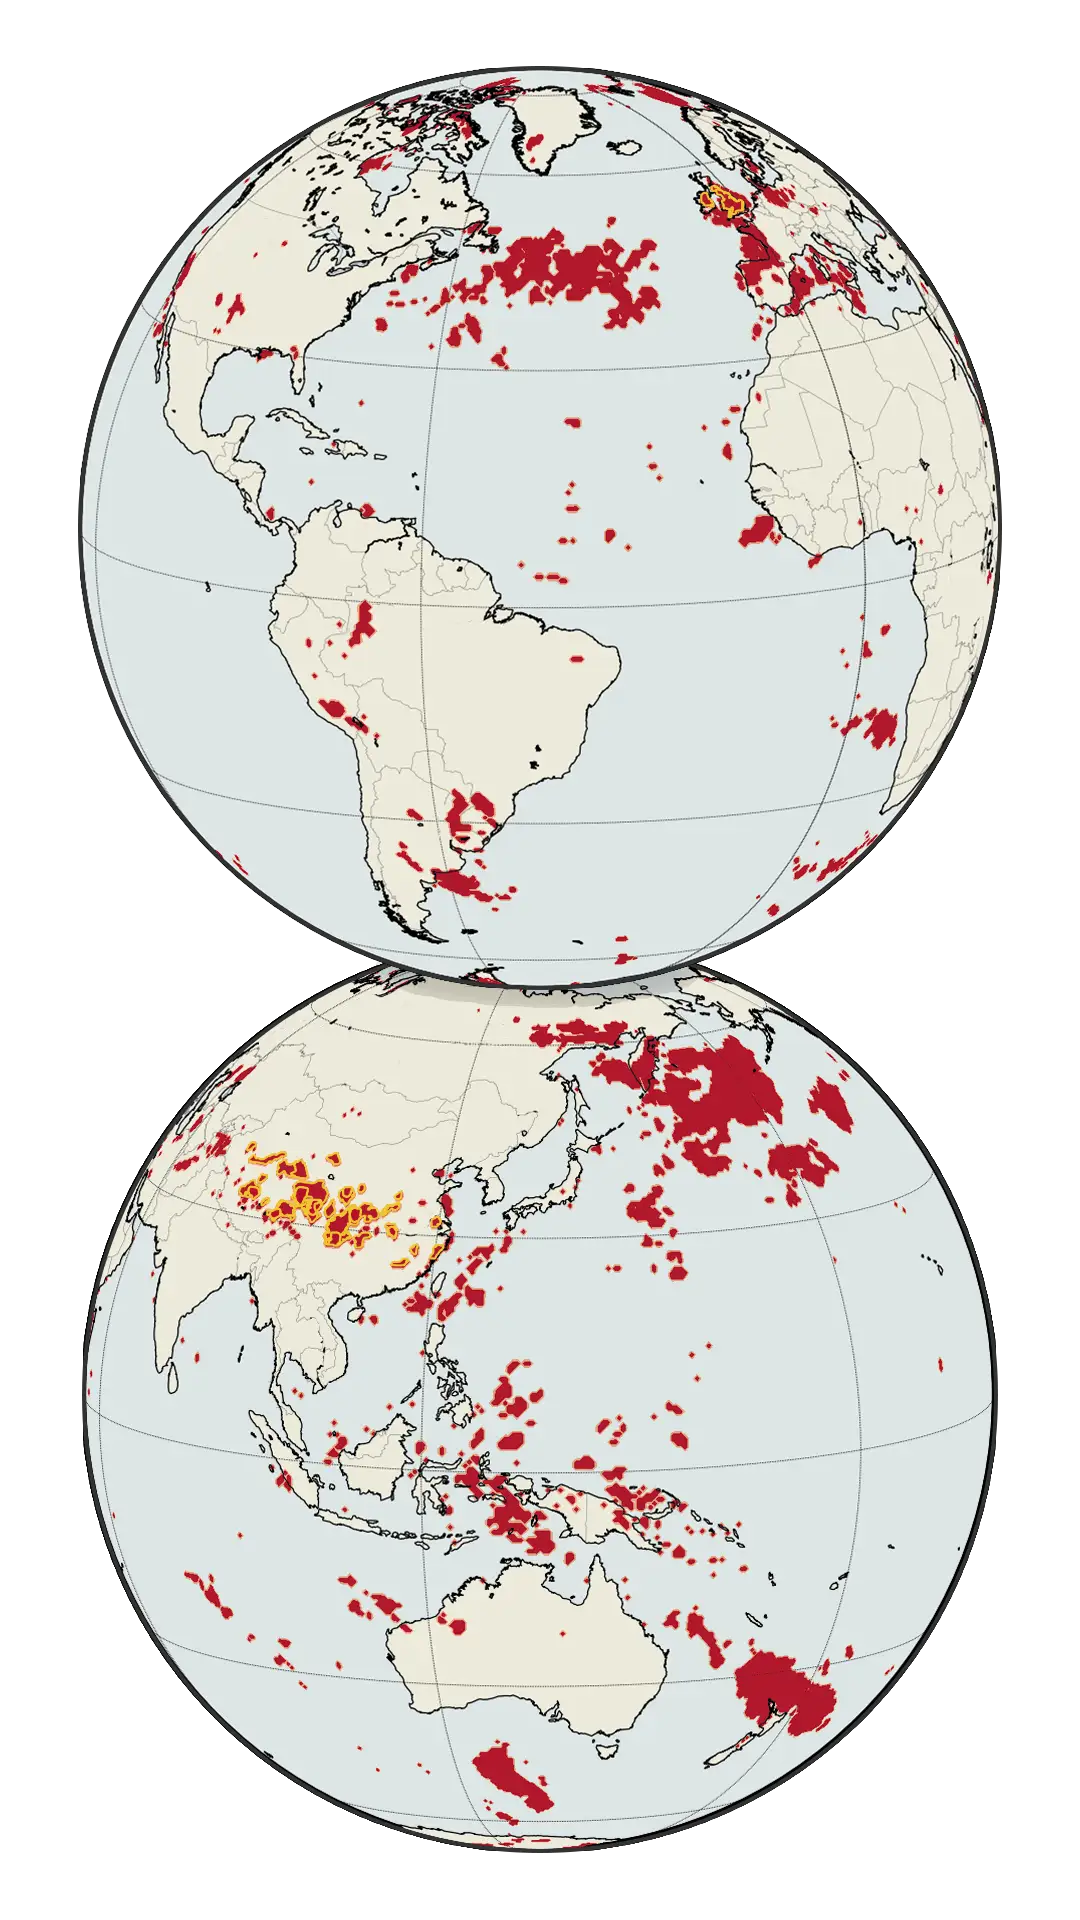 دنیا کا نقشہ پچھلی دہائی کے دوران ریکارڈ درجہ حرارت والے علاقوں کو دکھا رہا ہے۔